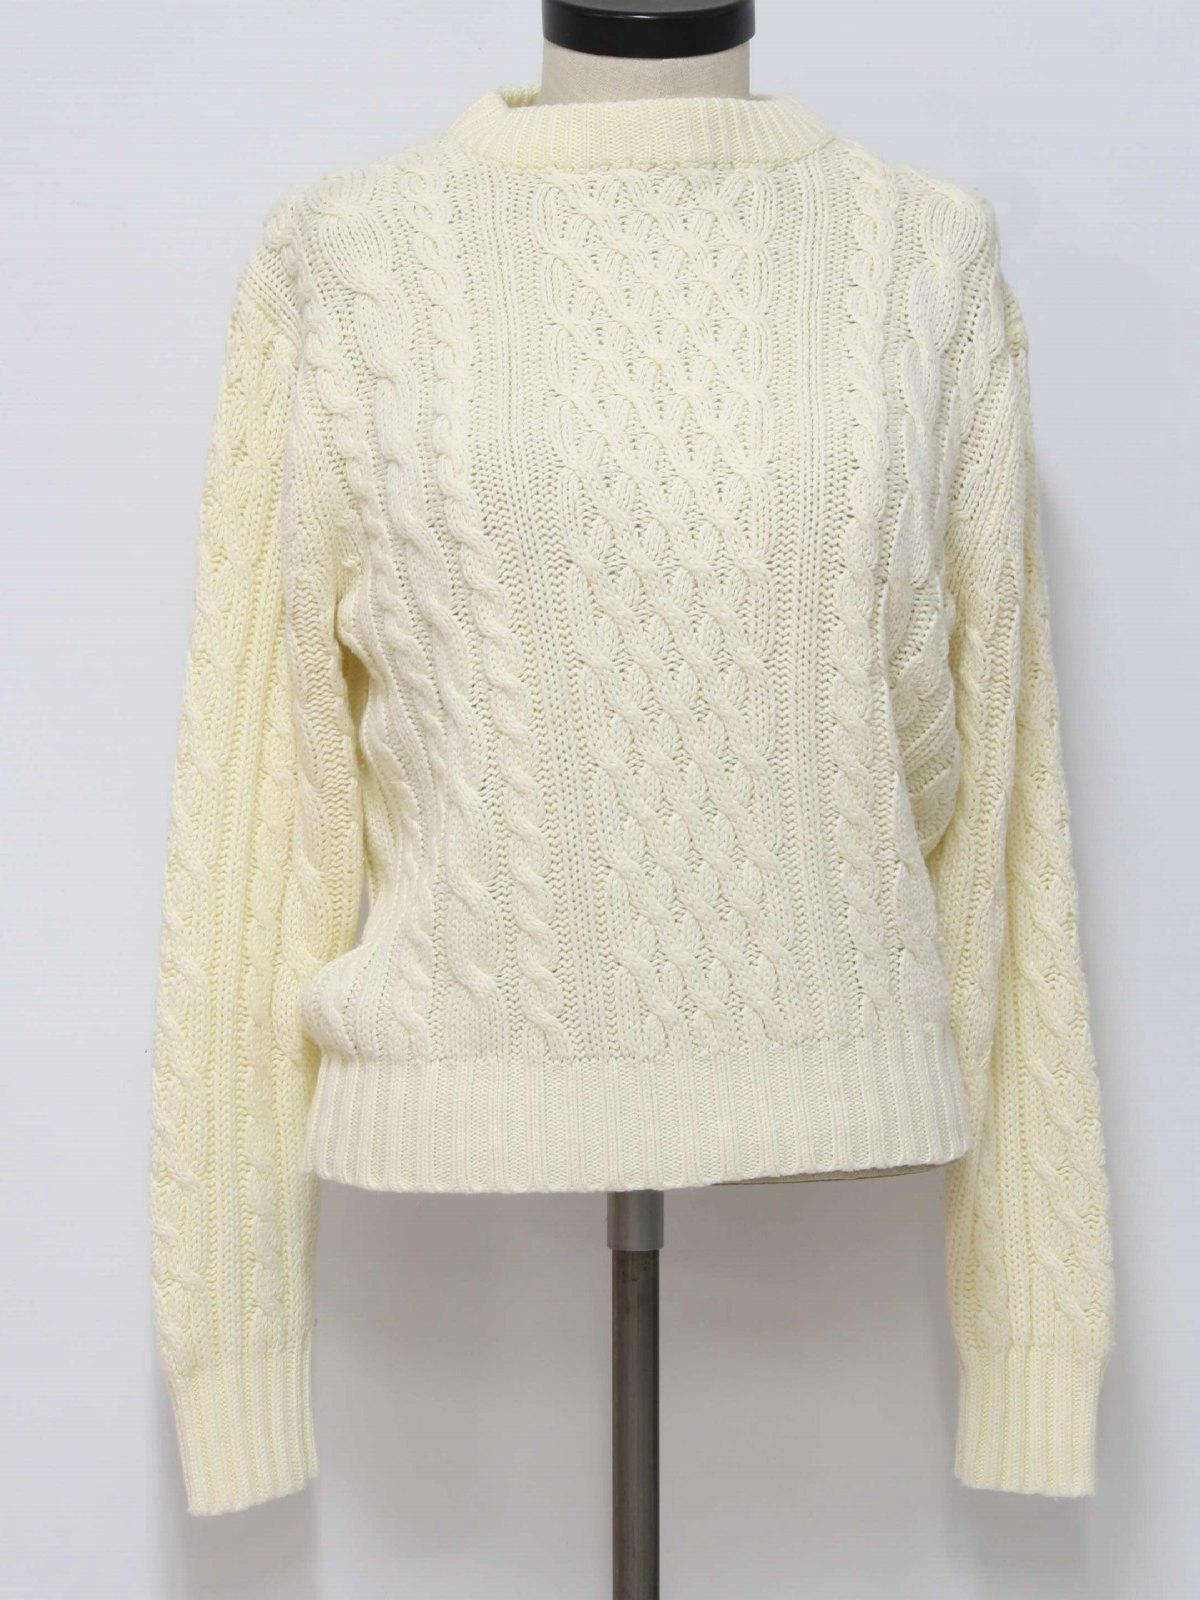 Vintage Sweater Emporium 1980s Sweater: 80s -Sweater Emporium ...